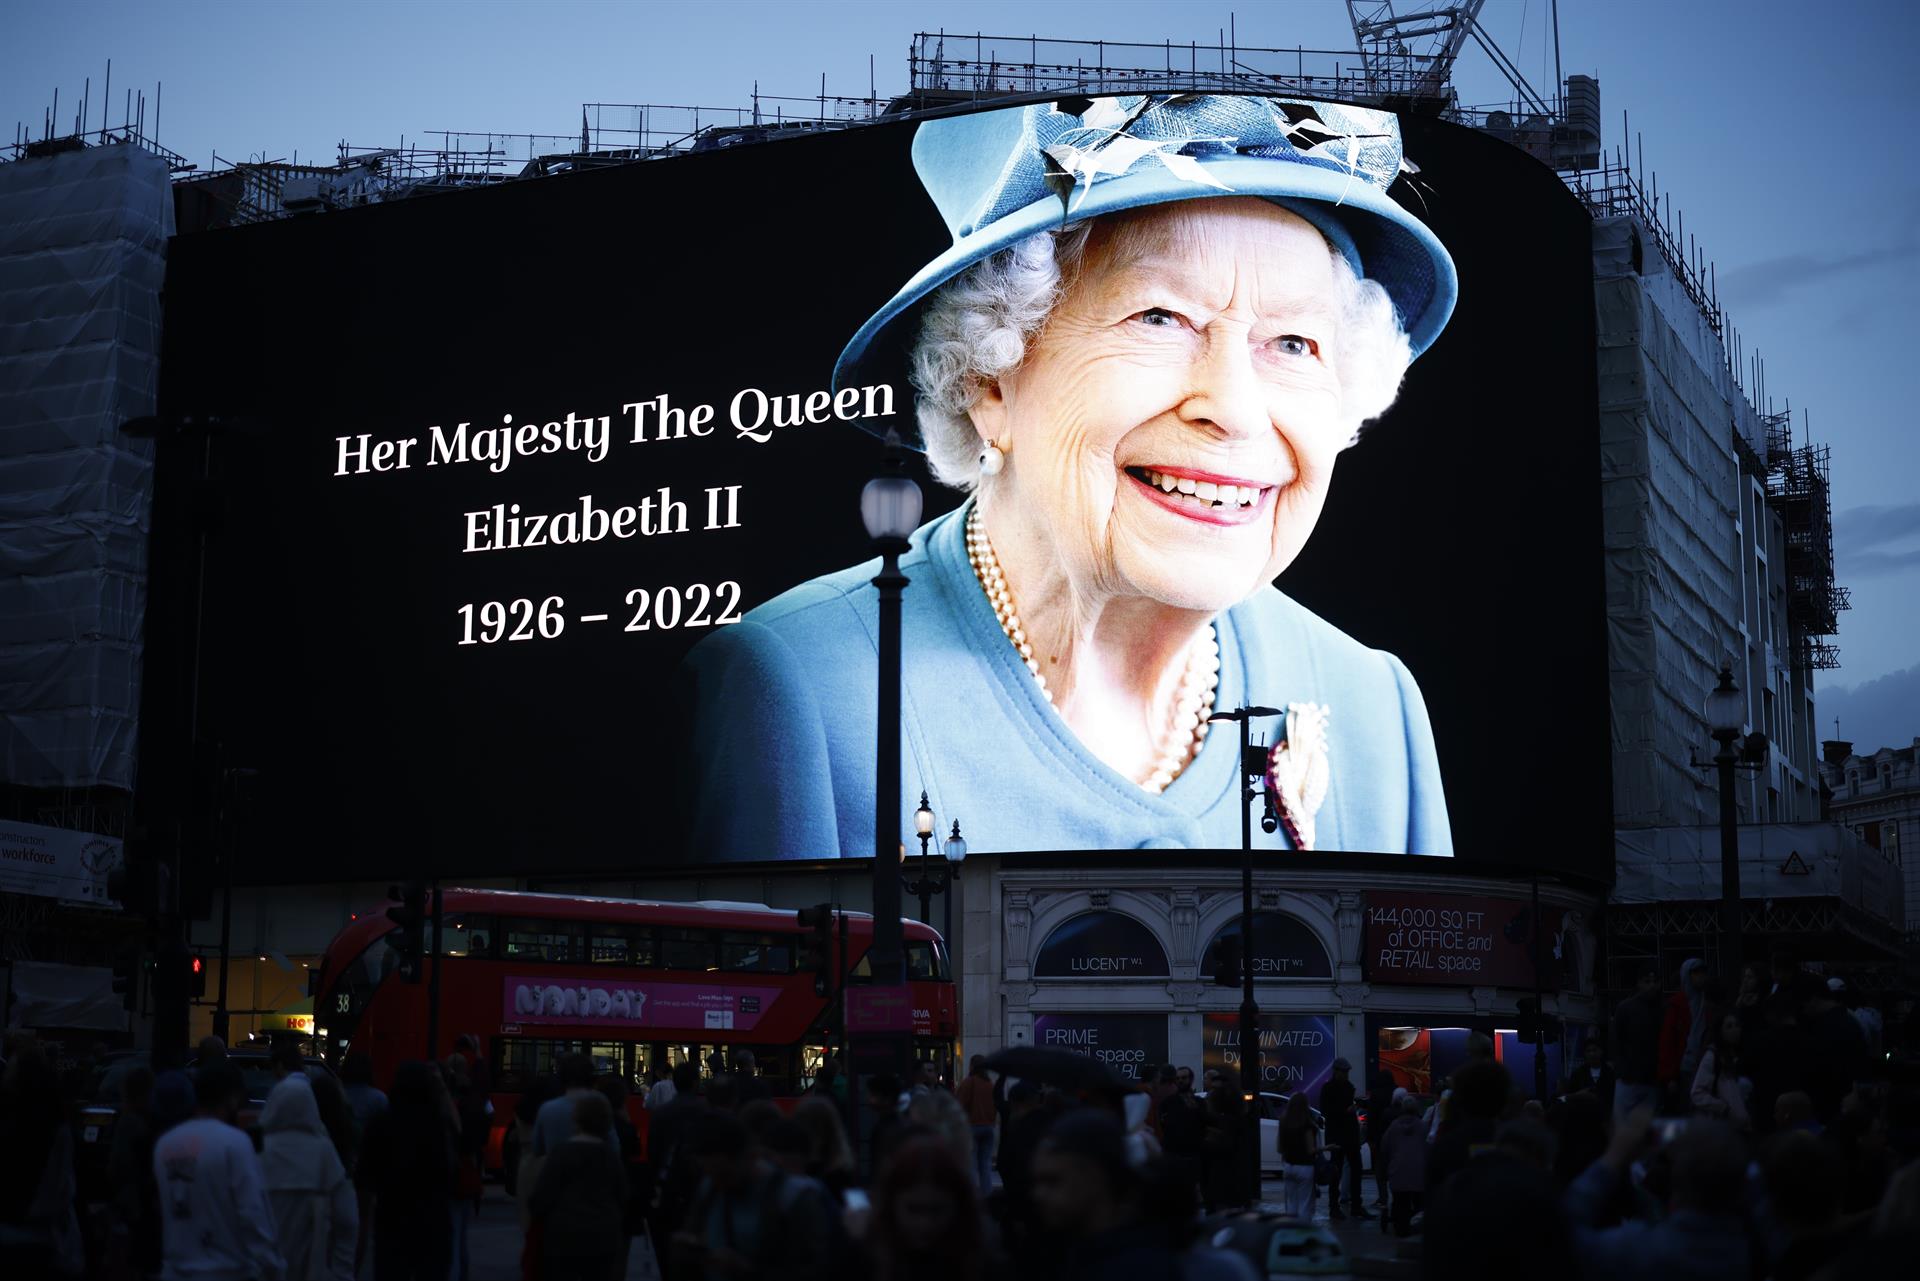 Les reaccions per la mort d'Elisabet II es multipliquen arreu del món: Des de Biden als Stones